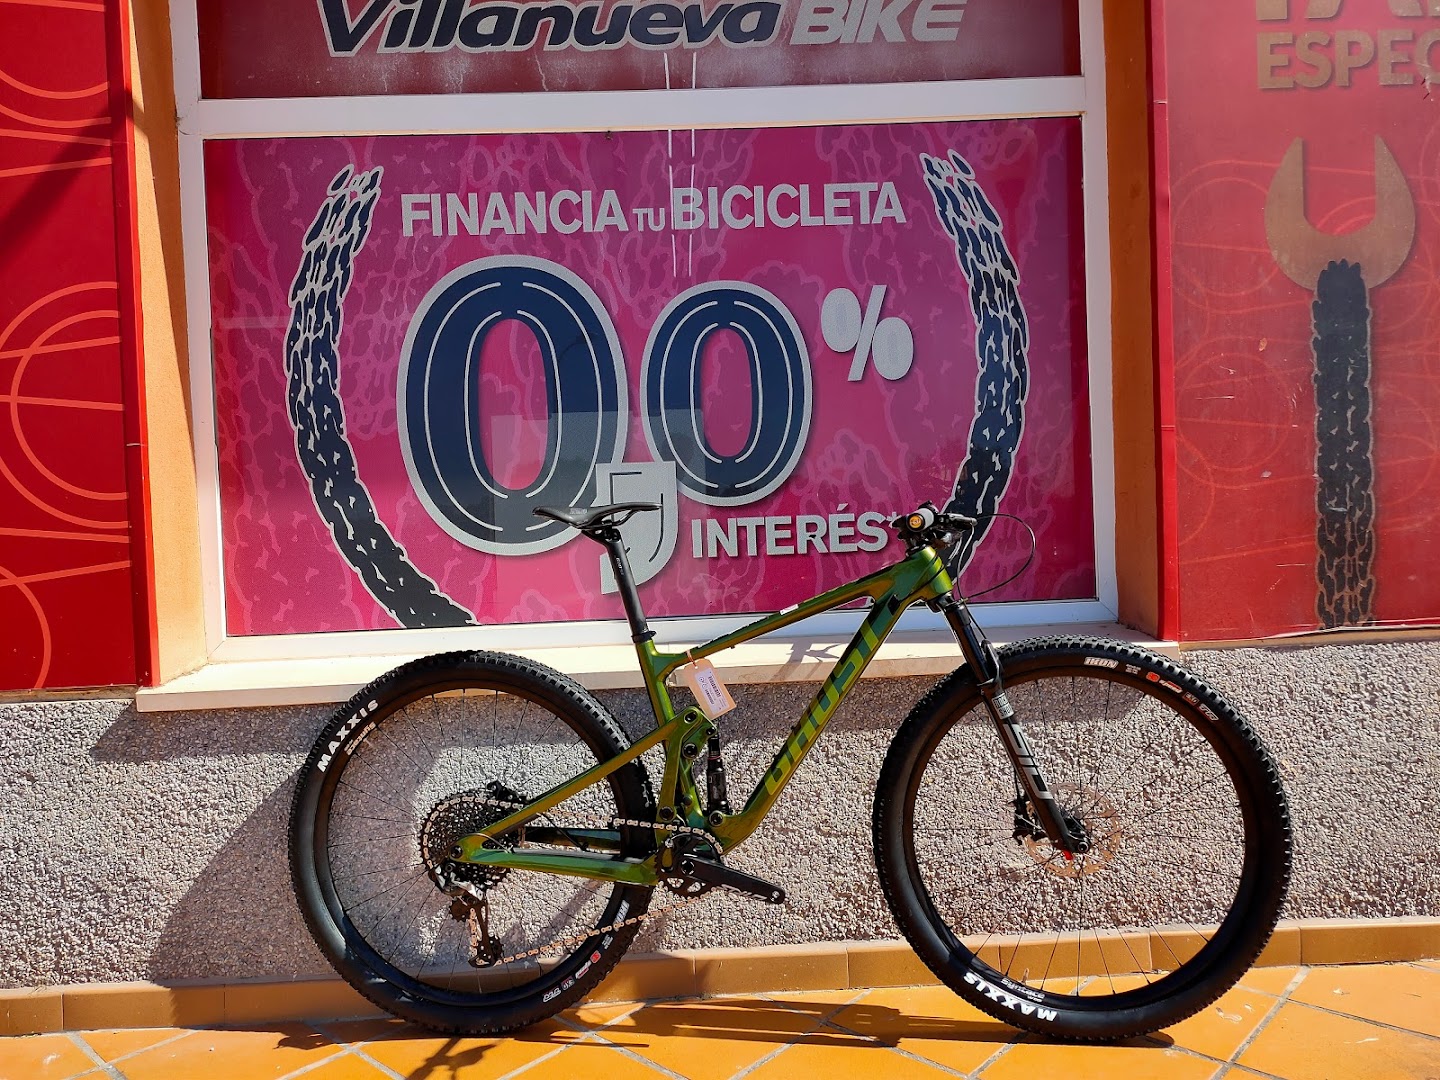 Villanueva Bike